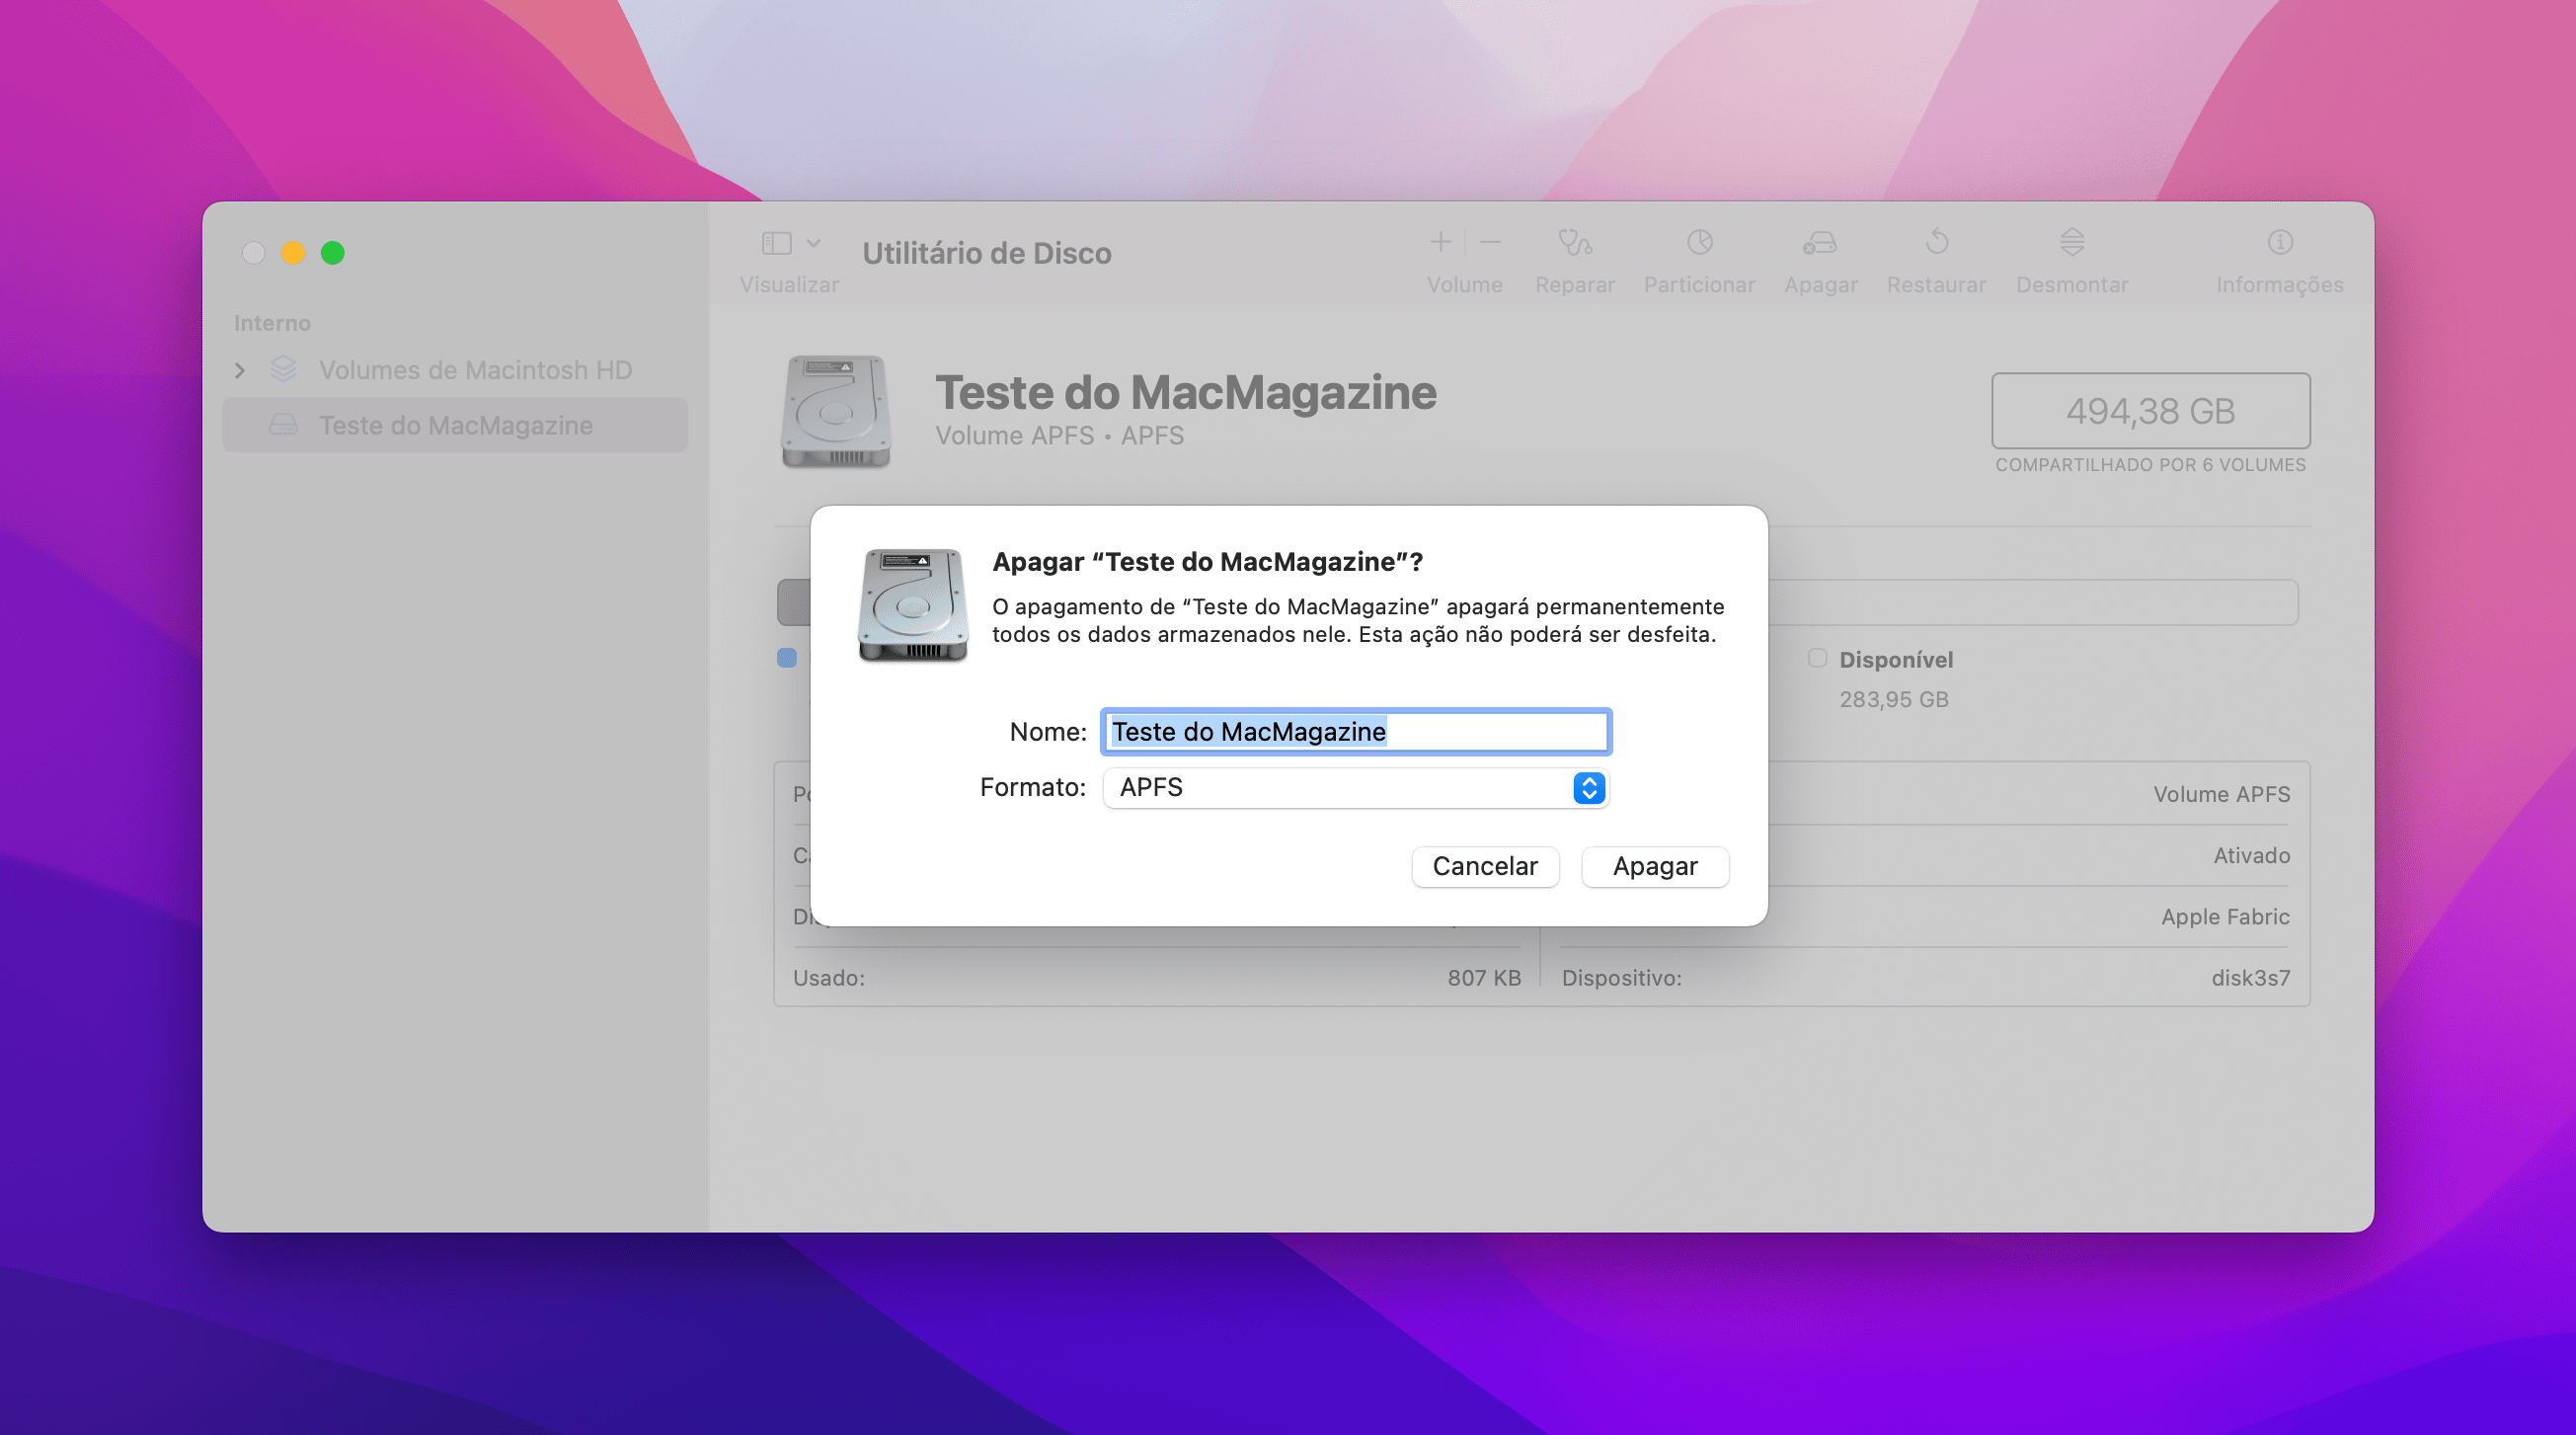 Criando novos volumes no Utilitário de Disco do macOS Monterey